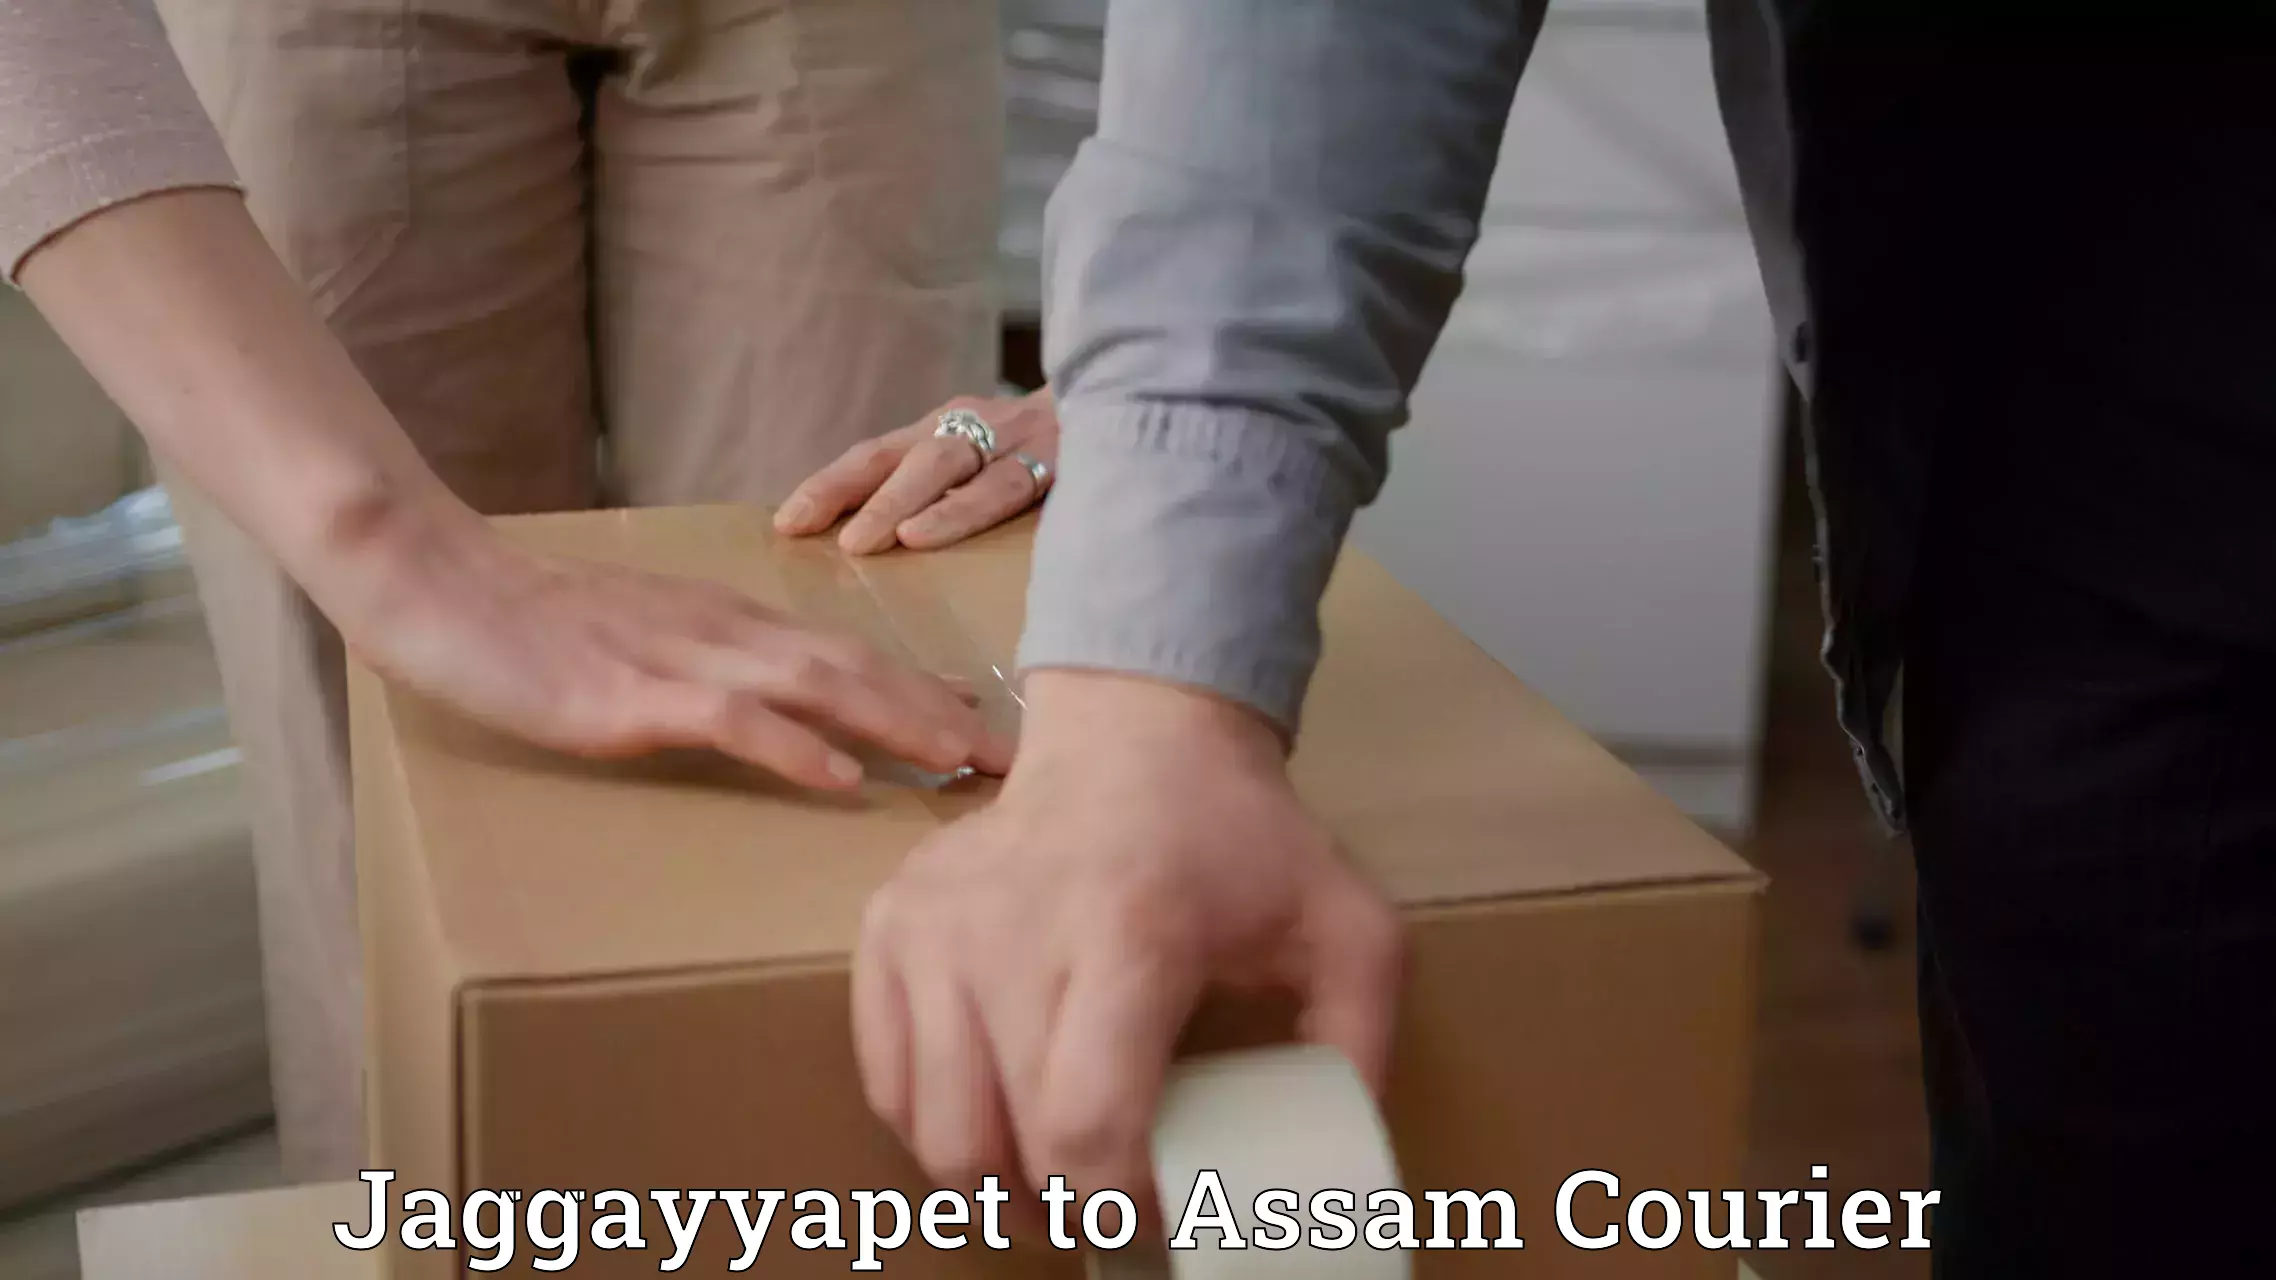 Digital courier platforms Jaggayyapet to Assam